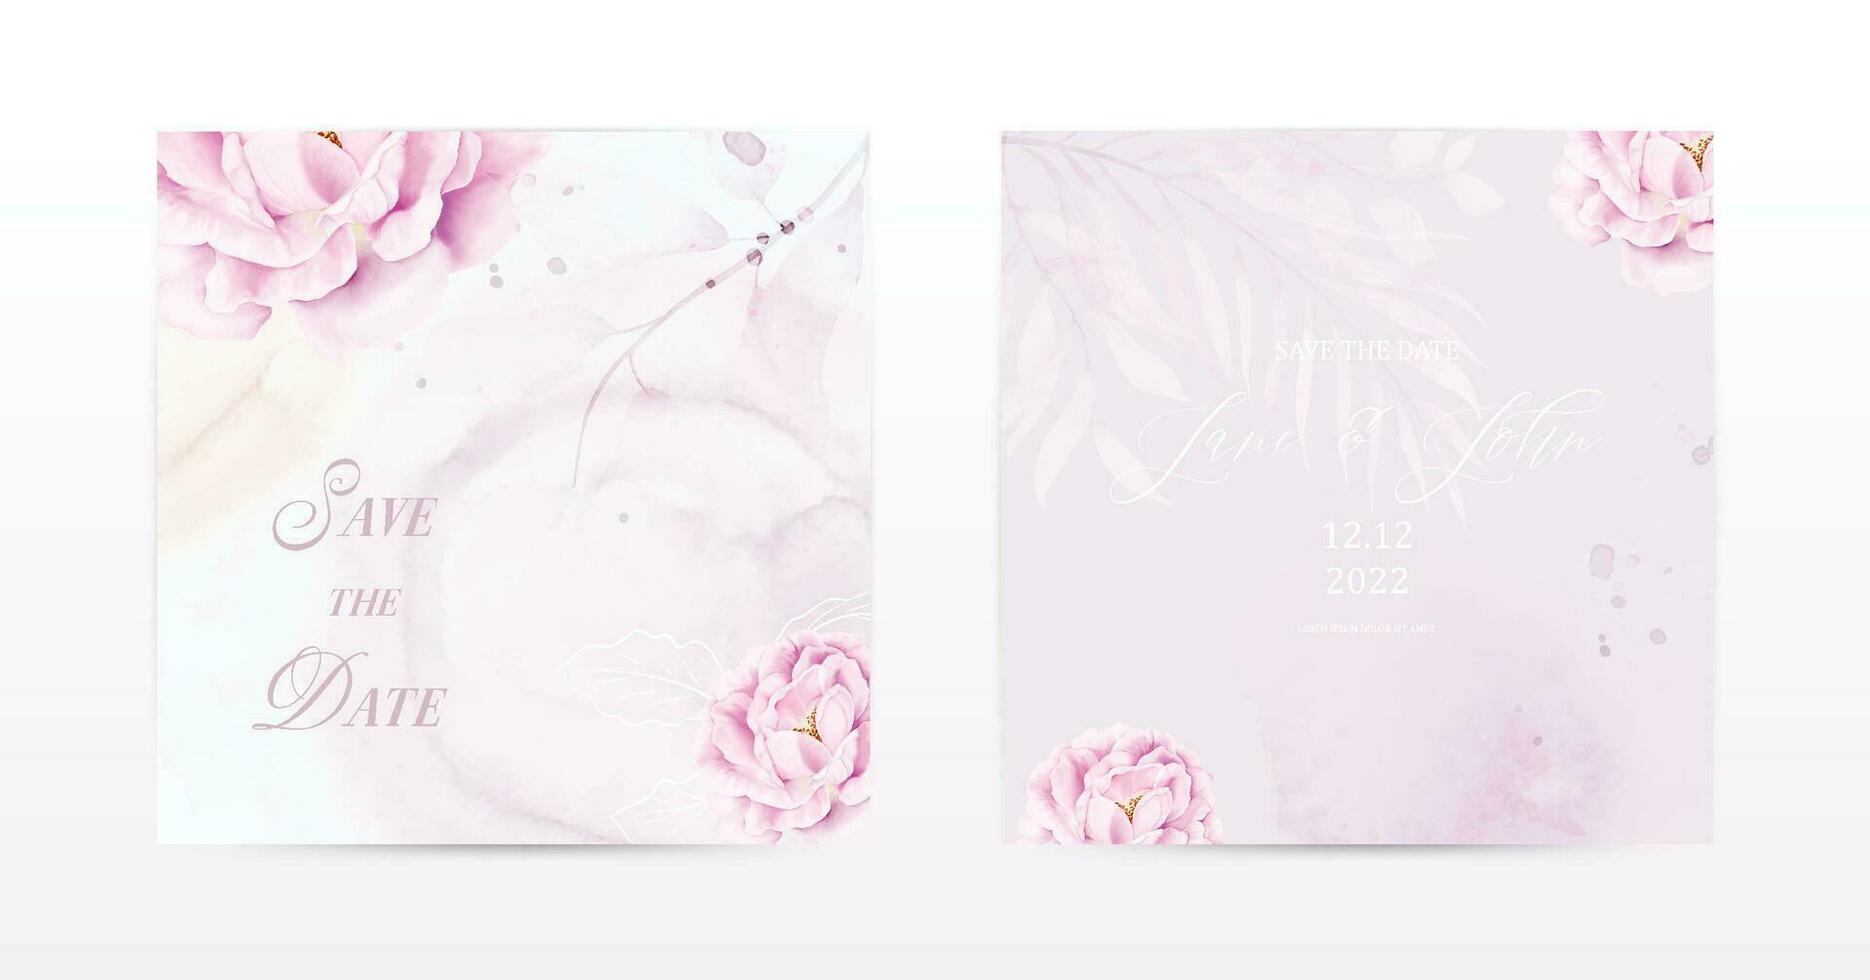 reeks van plein kaarten ontworpen met roze roos bloemen waterverf vector